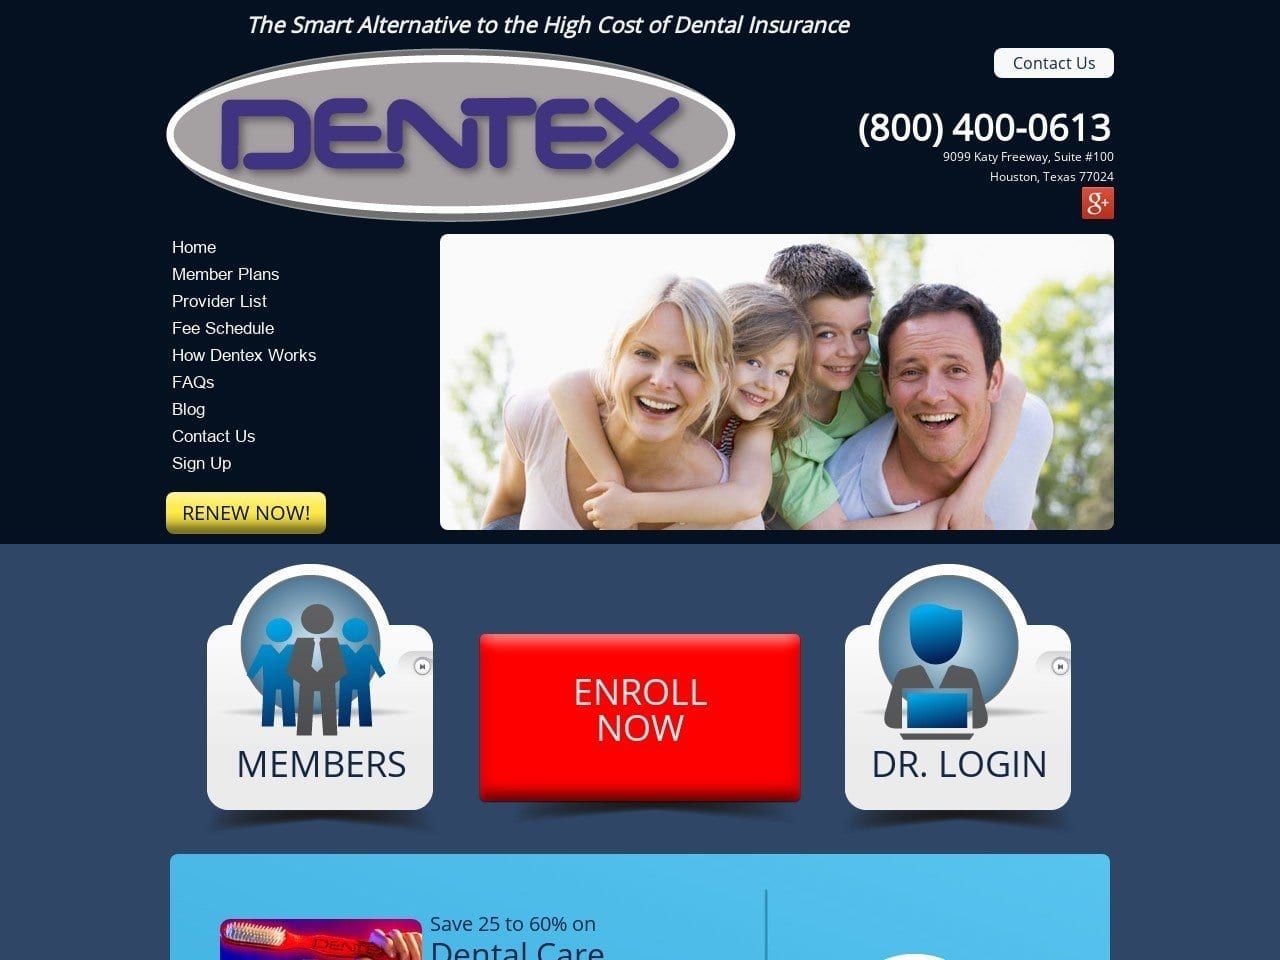 Dentex Dental Plan Inc Website Screenshot from dentex.net